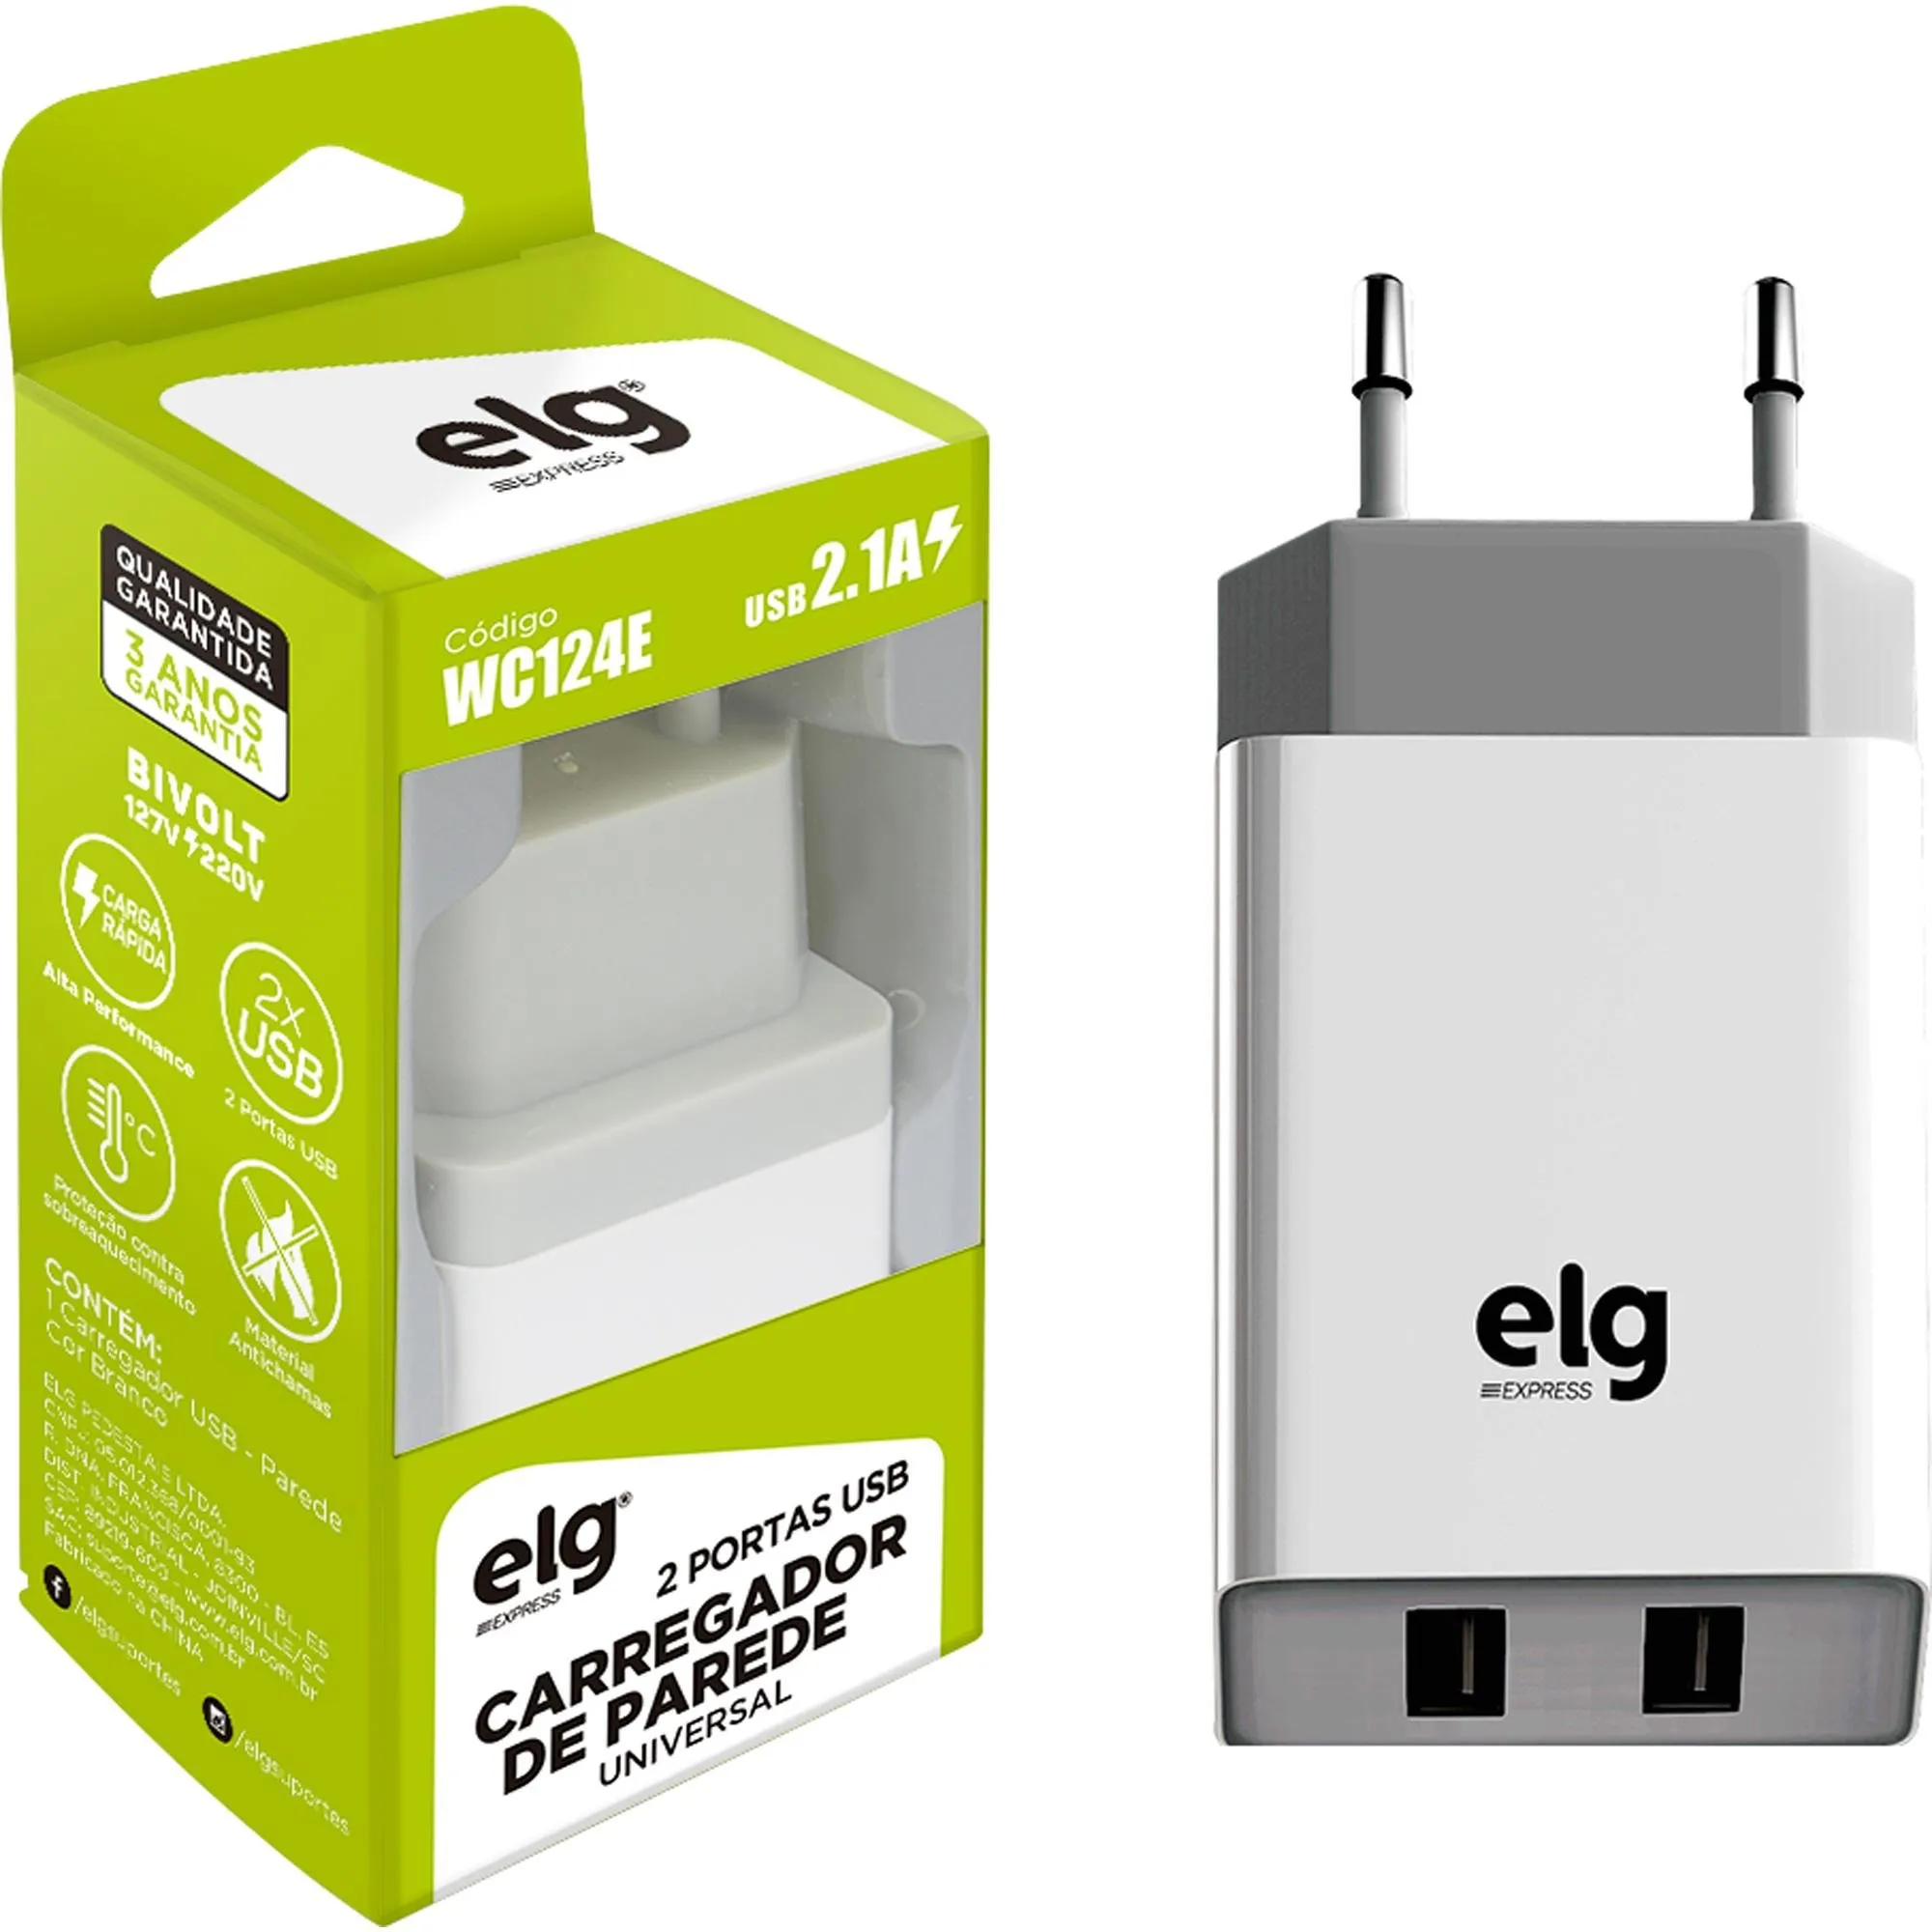 Carregador de Parede Universal WC124E Branco 2P USB ELG por 33,99 à vista no boleto/pix ou parcele em até 1x sem juros. Compre na loja Mundomax!